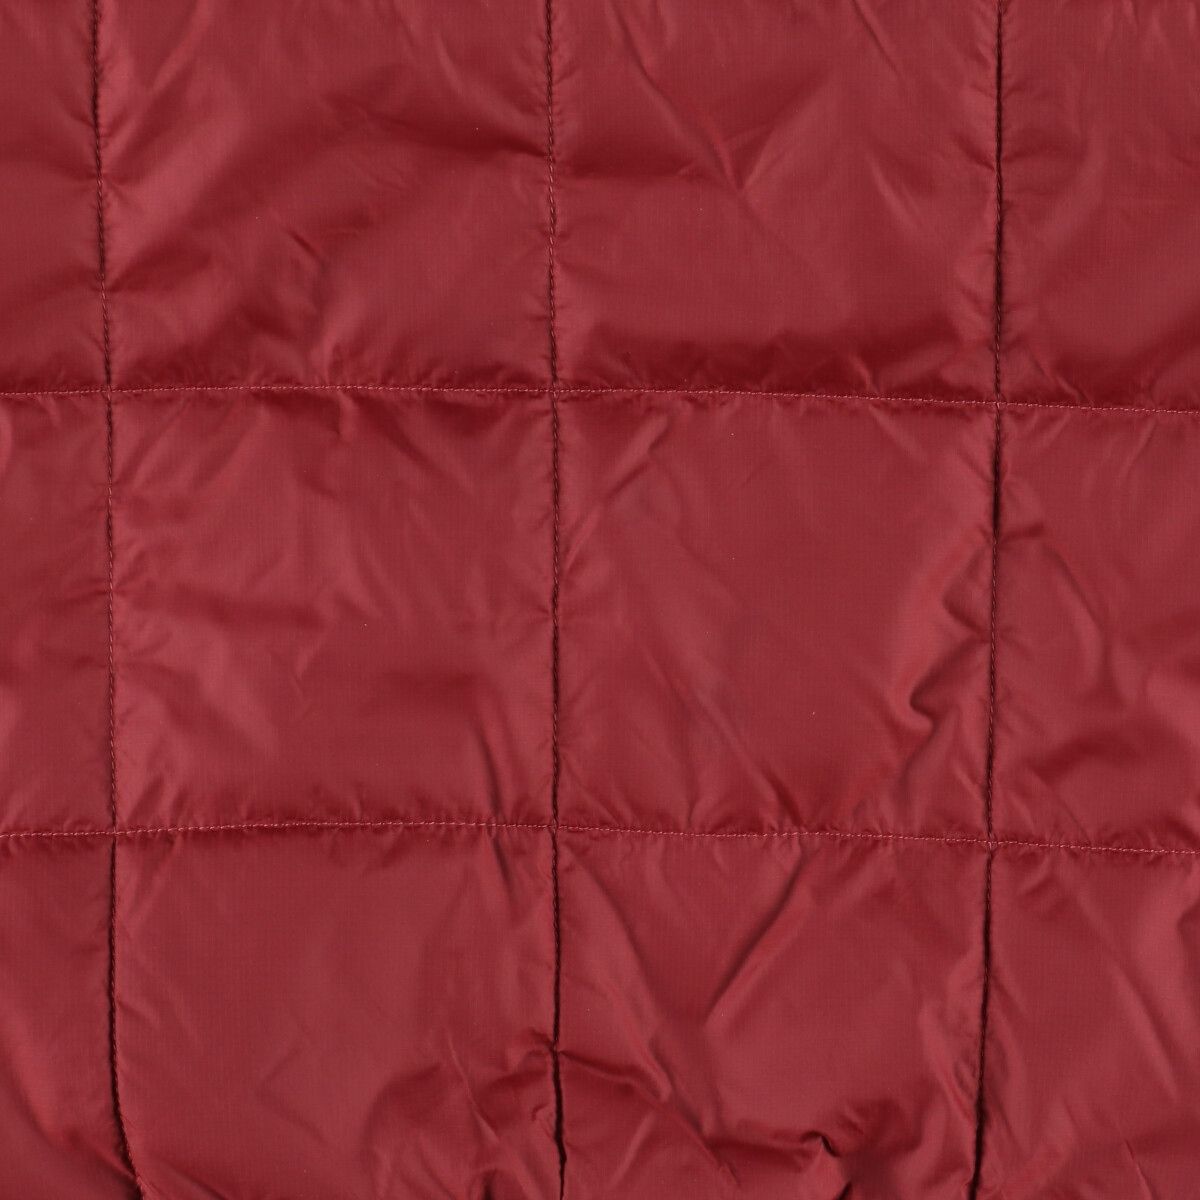 ワインレッドネイビー系紺色柄22年製 パタゴニア Patagonia Box Quilted Pullover Jacket STY 20835FA22 ハーフジップ 中綿ジャケット メンズM /eaa385916